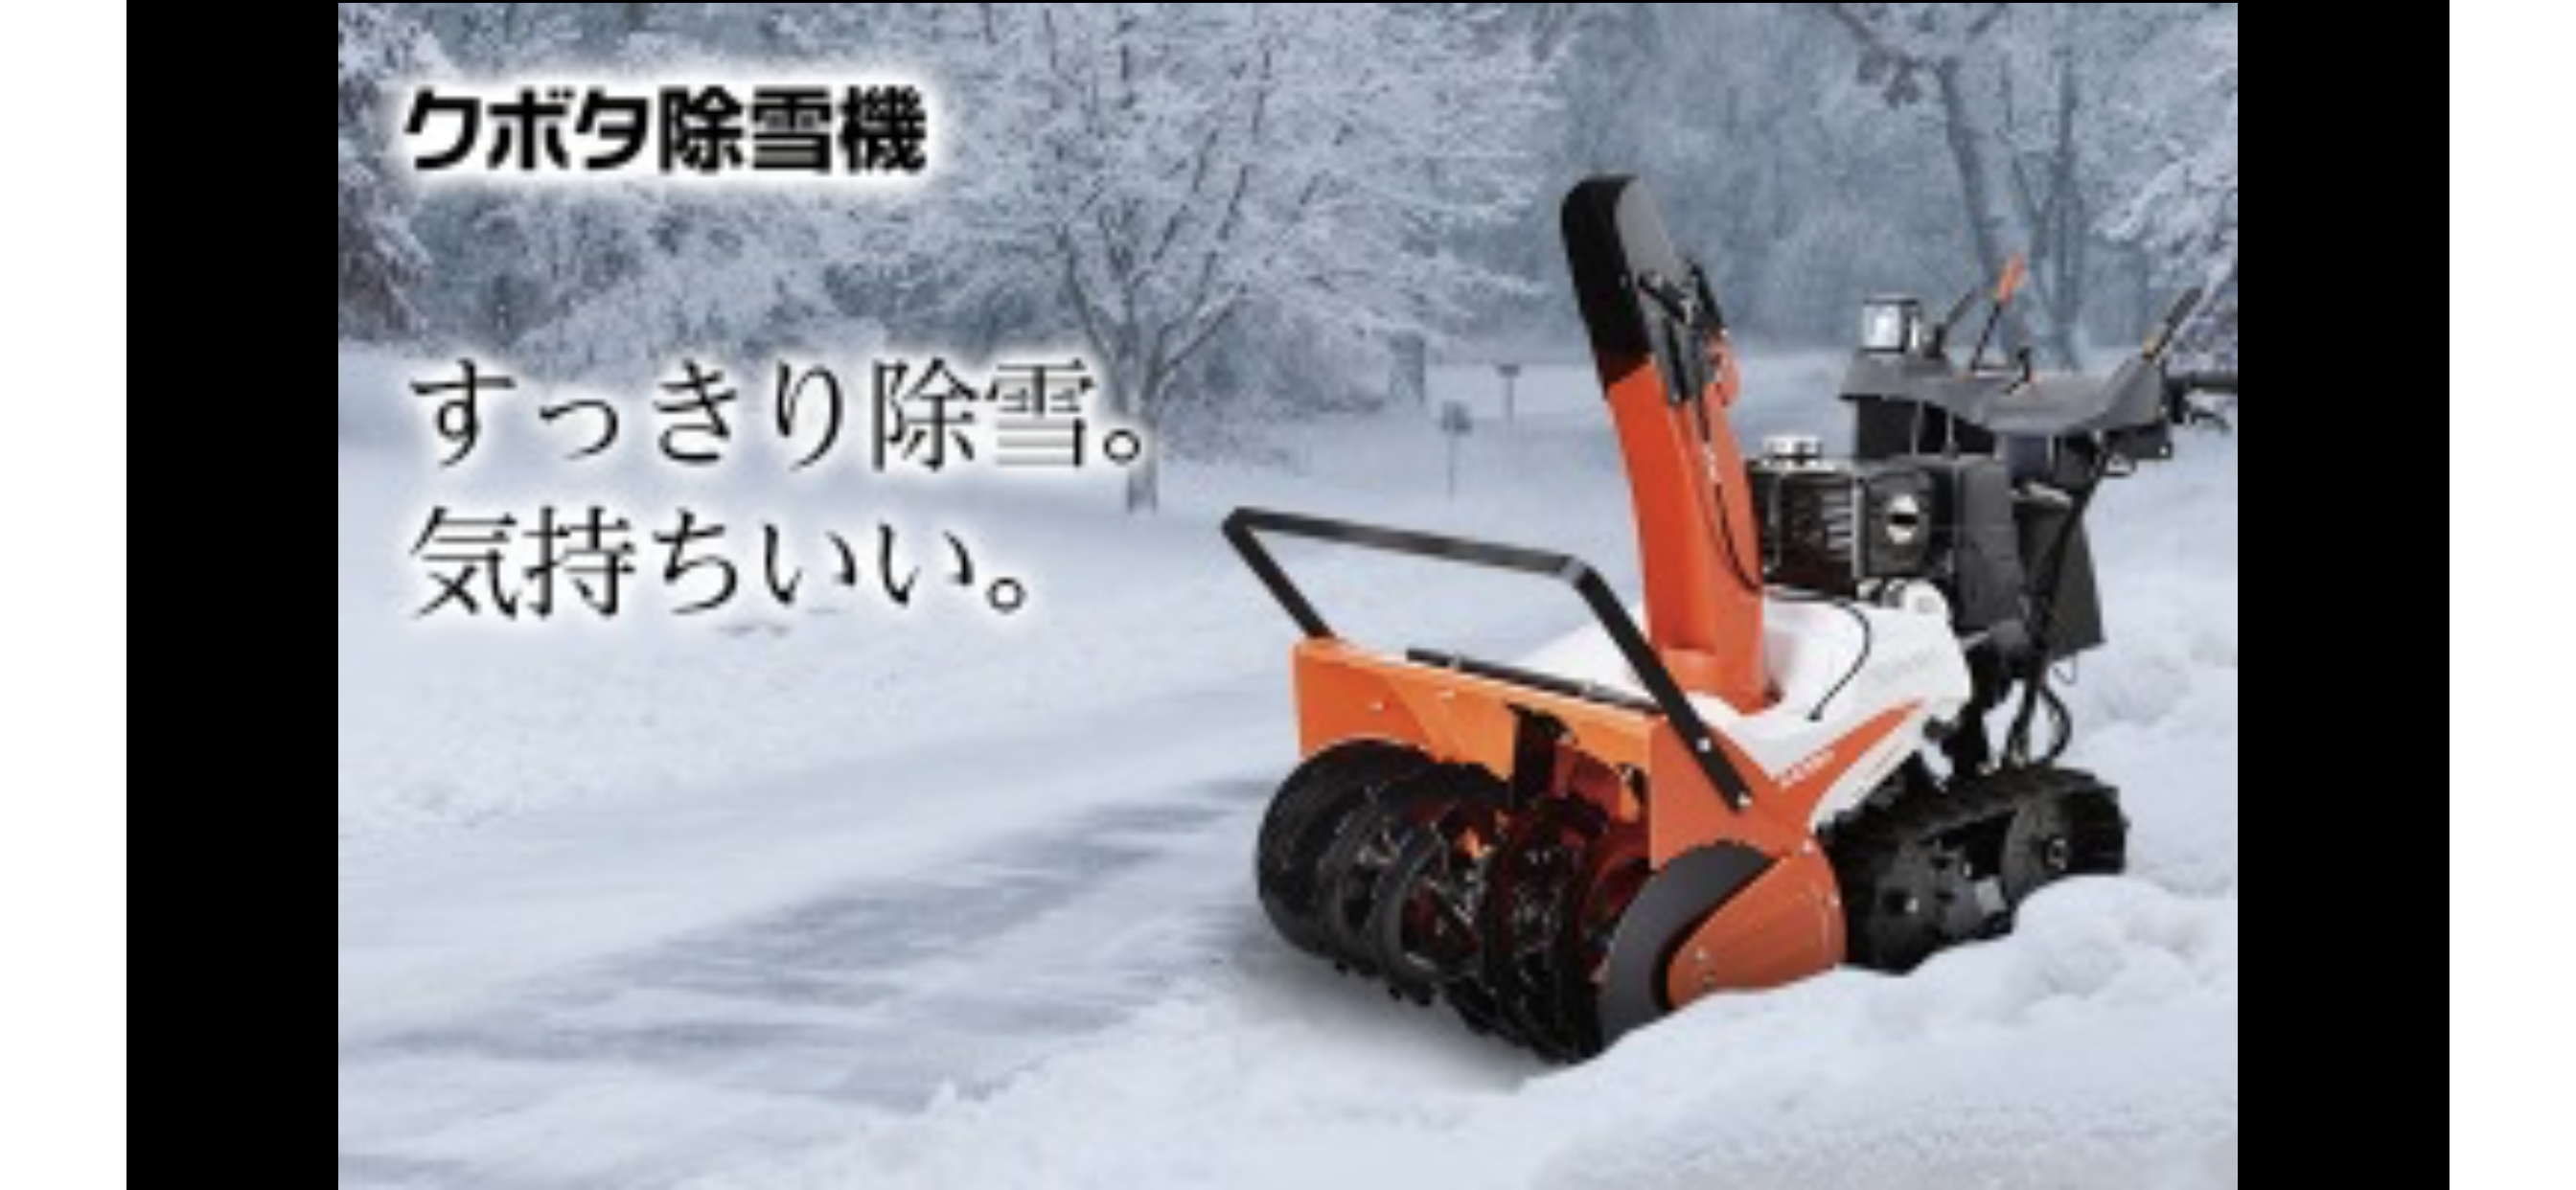 除雪機 佐藤サービス 出雲崎 公式ホームページ 自動車 農業機械 除雪機 ドローンのプロ集団